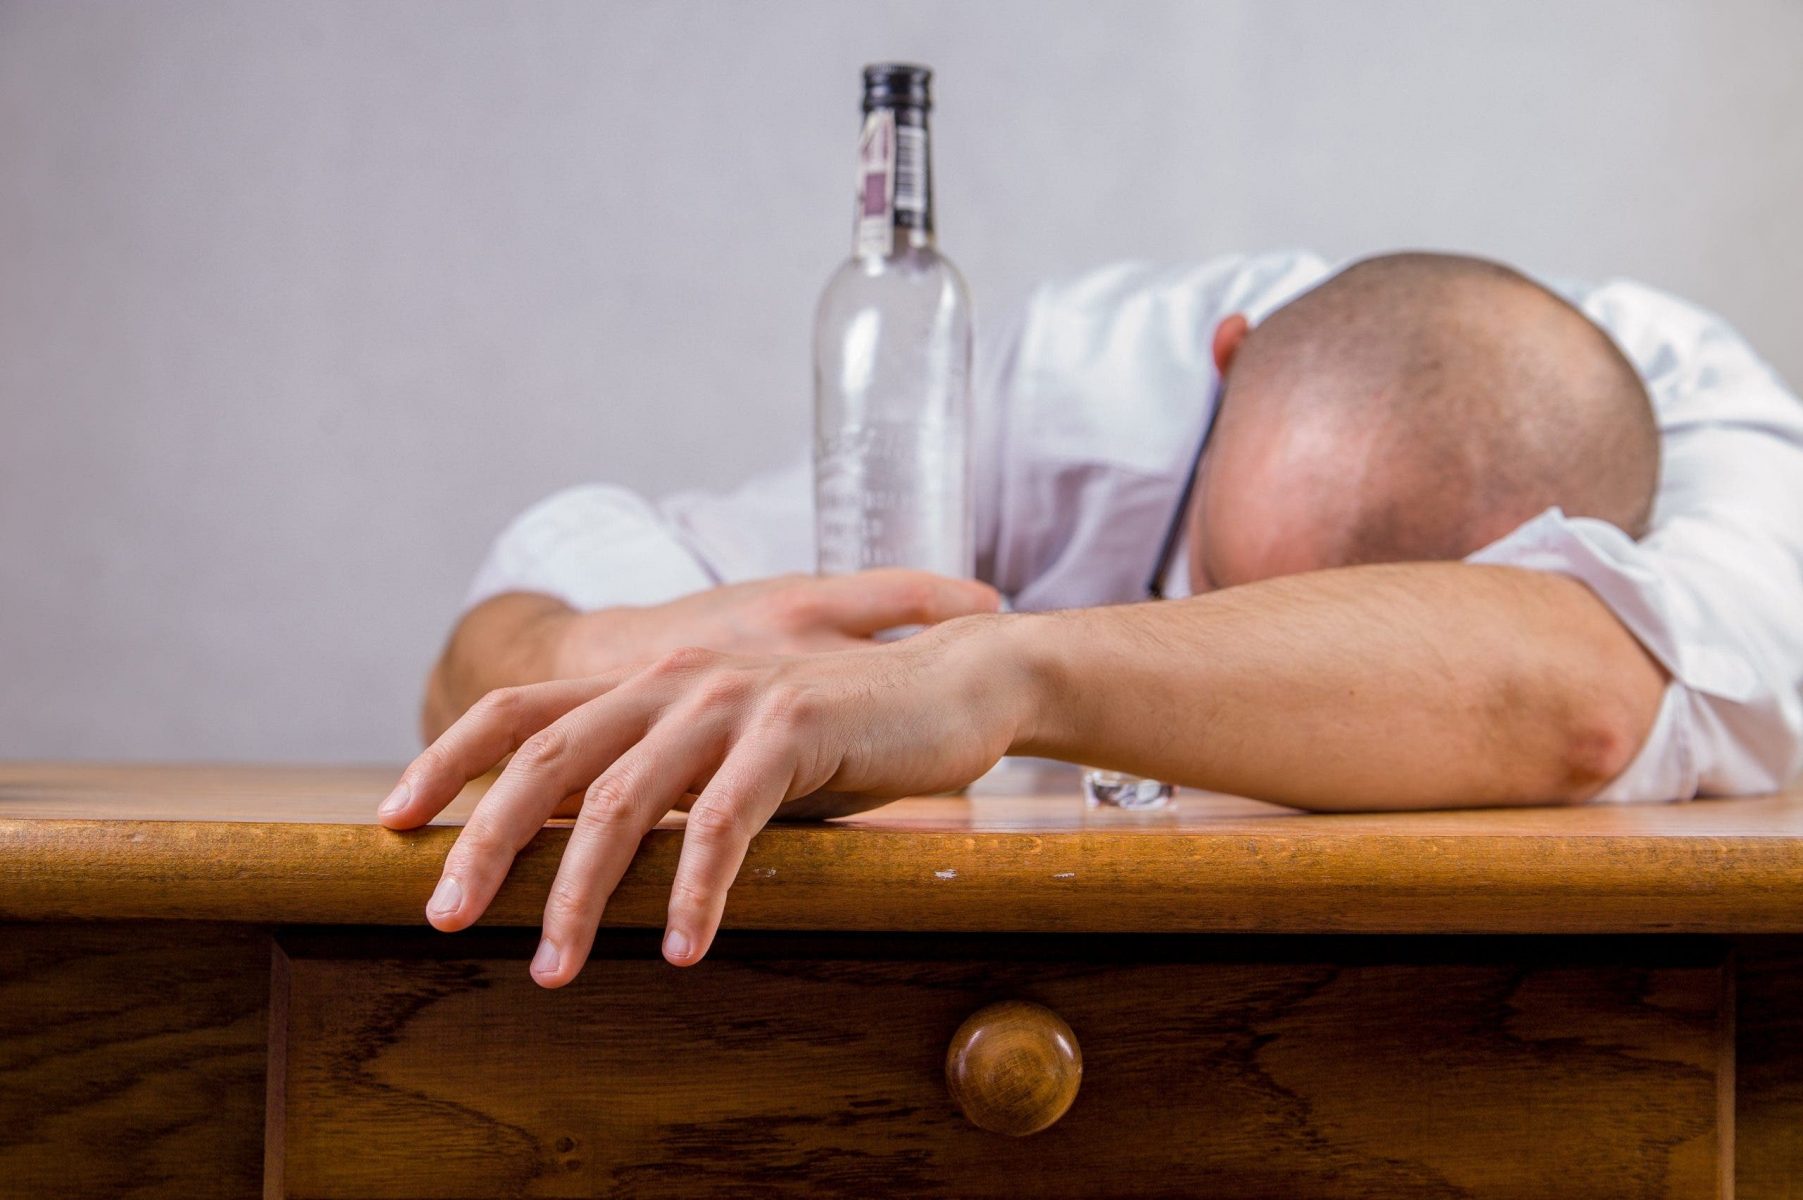 Αλκοολισμός- τύποι- συνέπειες: Ένα τέρας που δεν μπορείς να το διακρίνεις